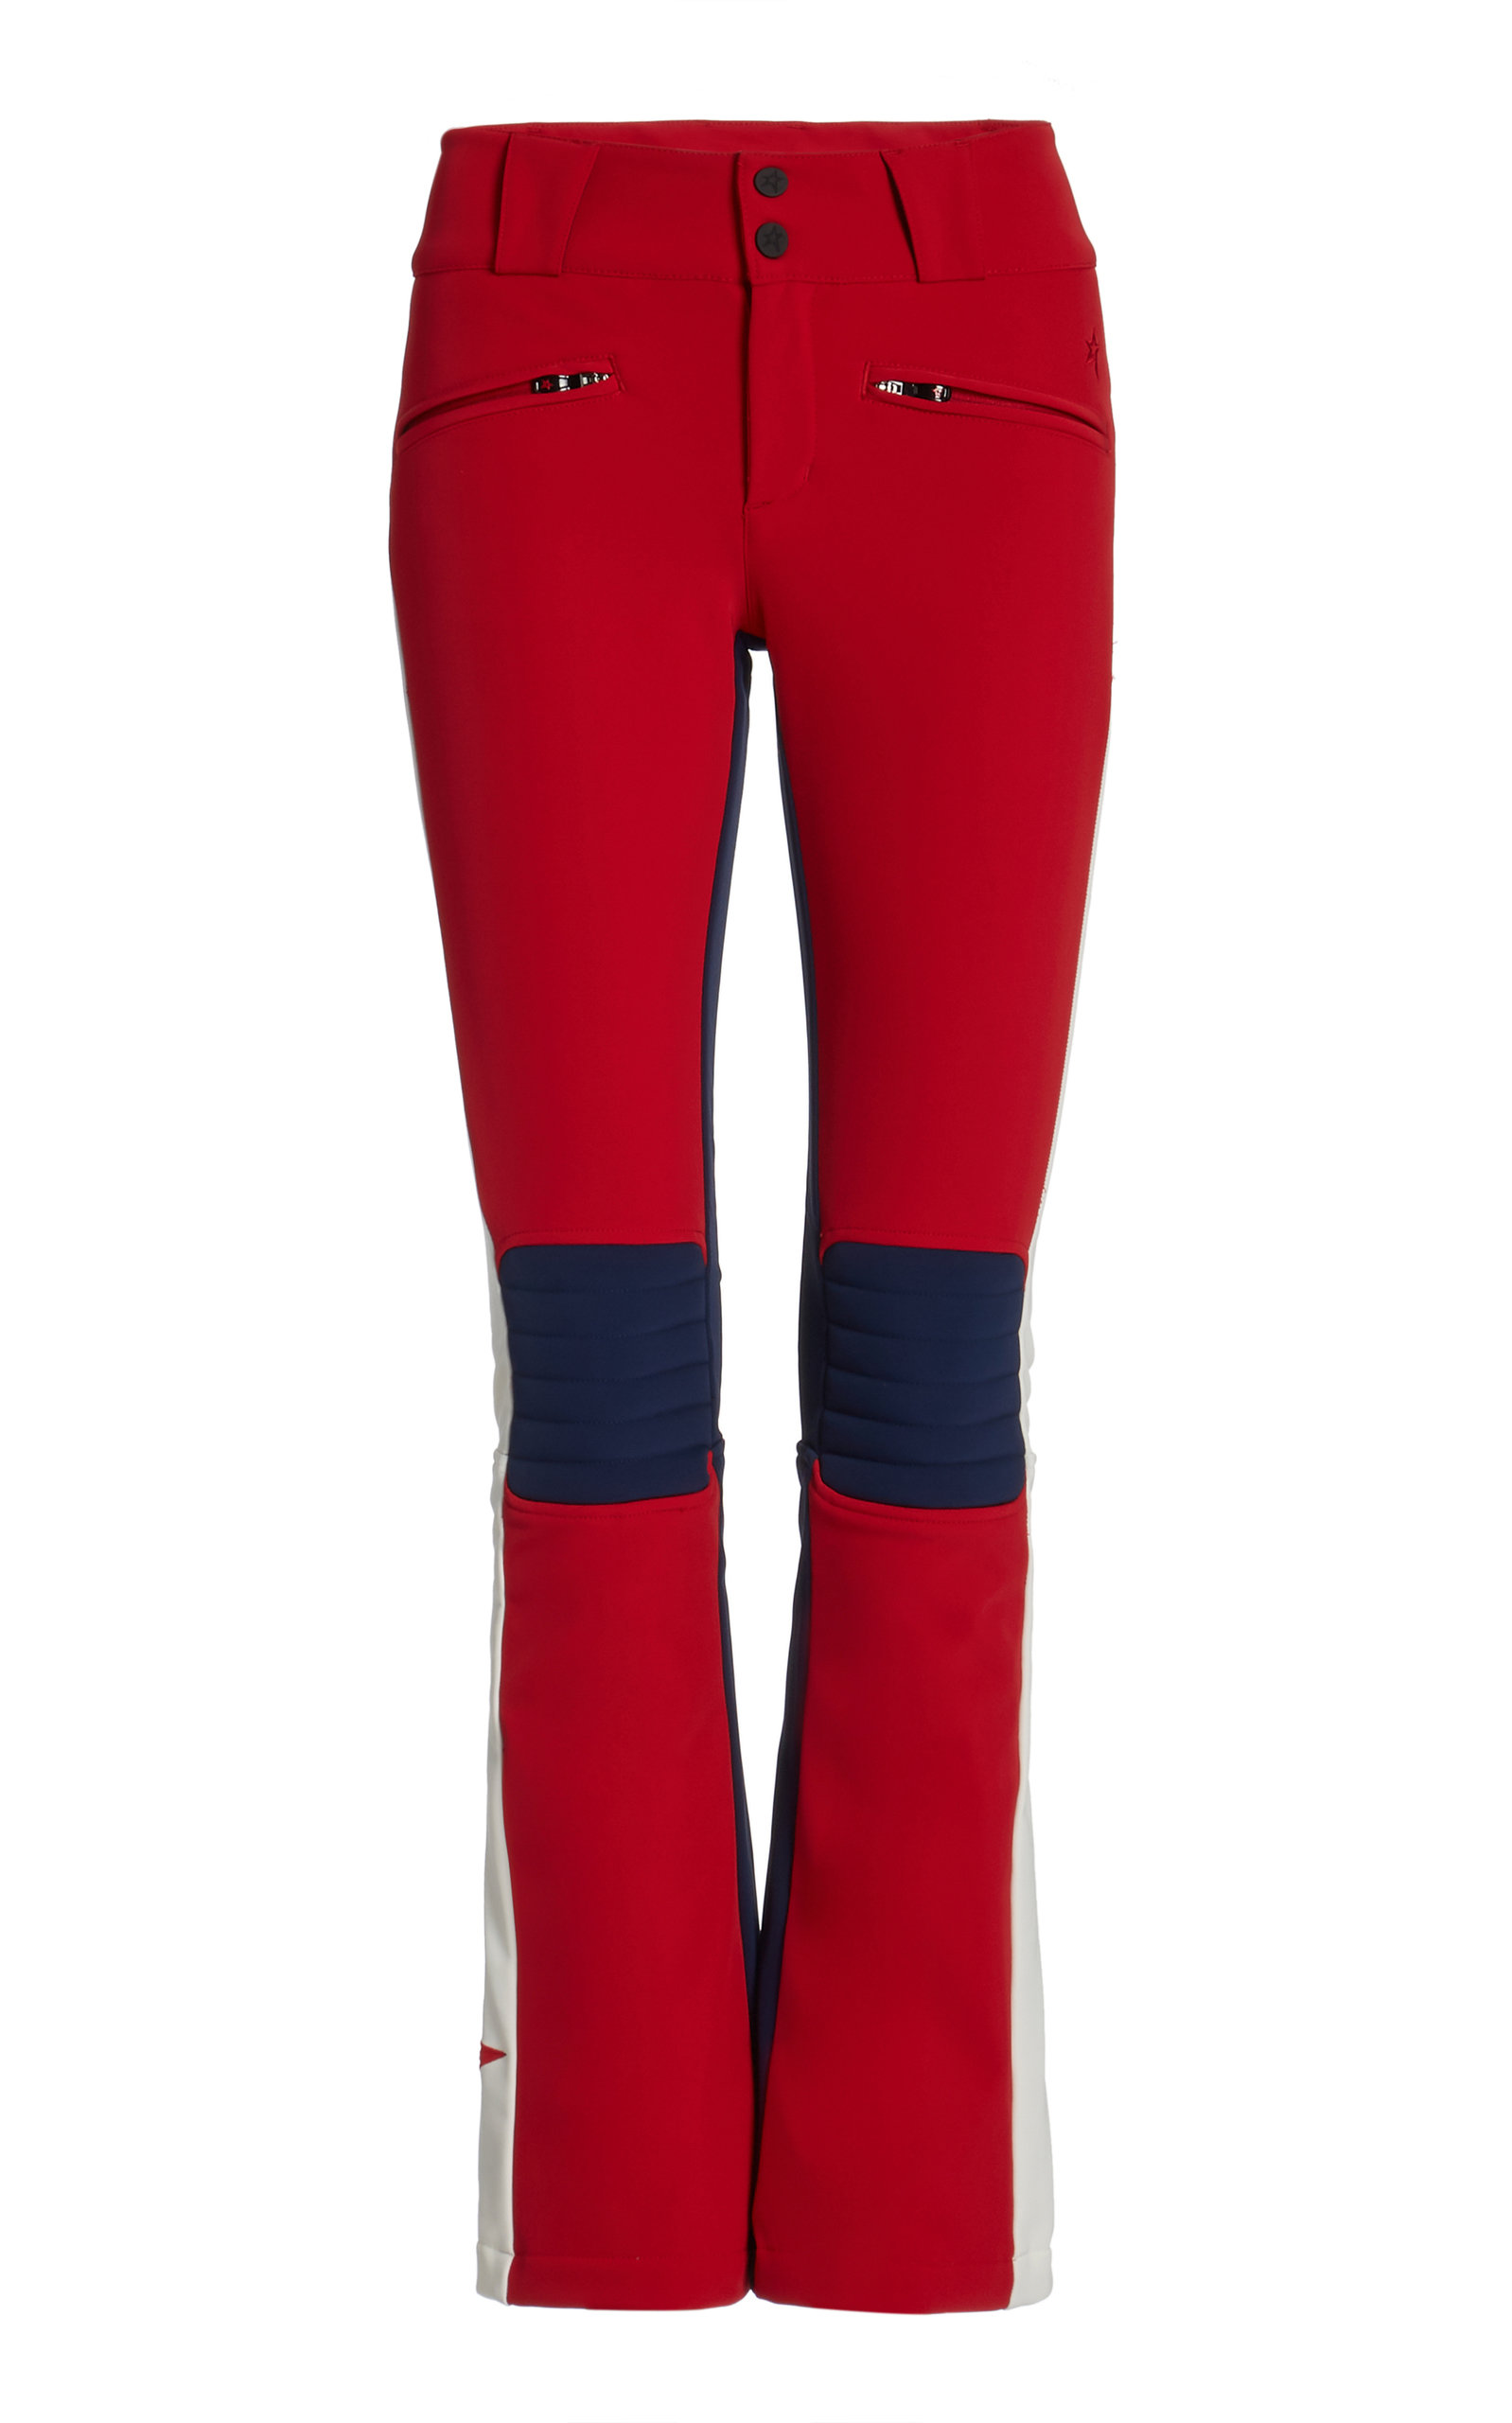 Perfect Moment - Women's GT Flared Ski Pants - Red/white - Moda Operandi